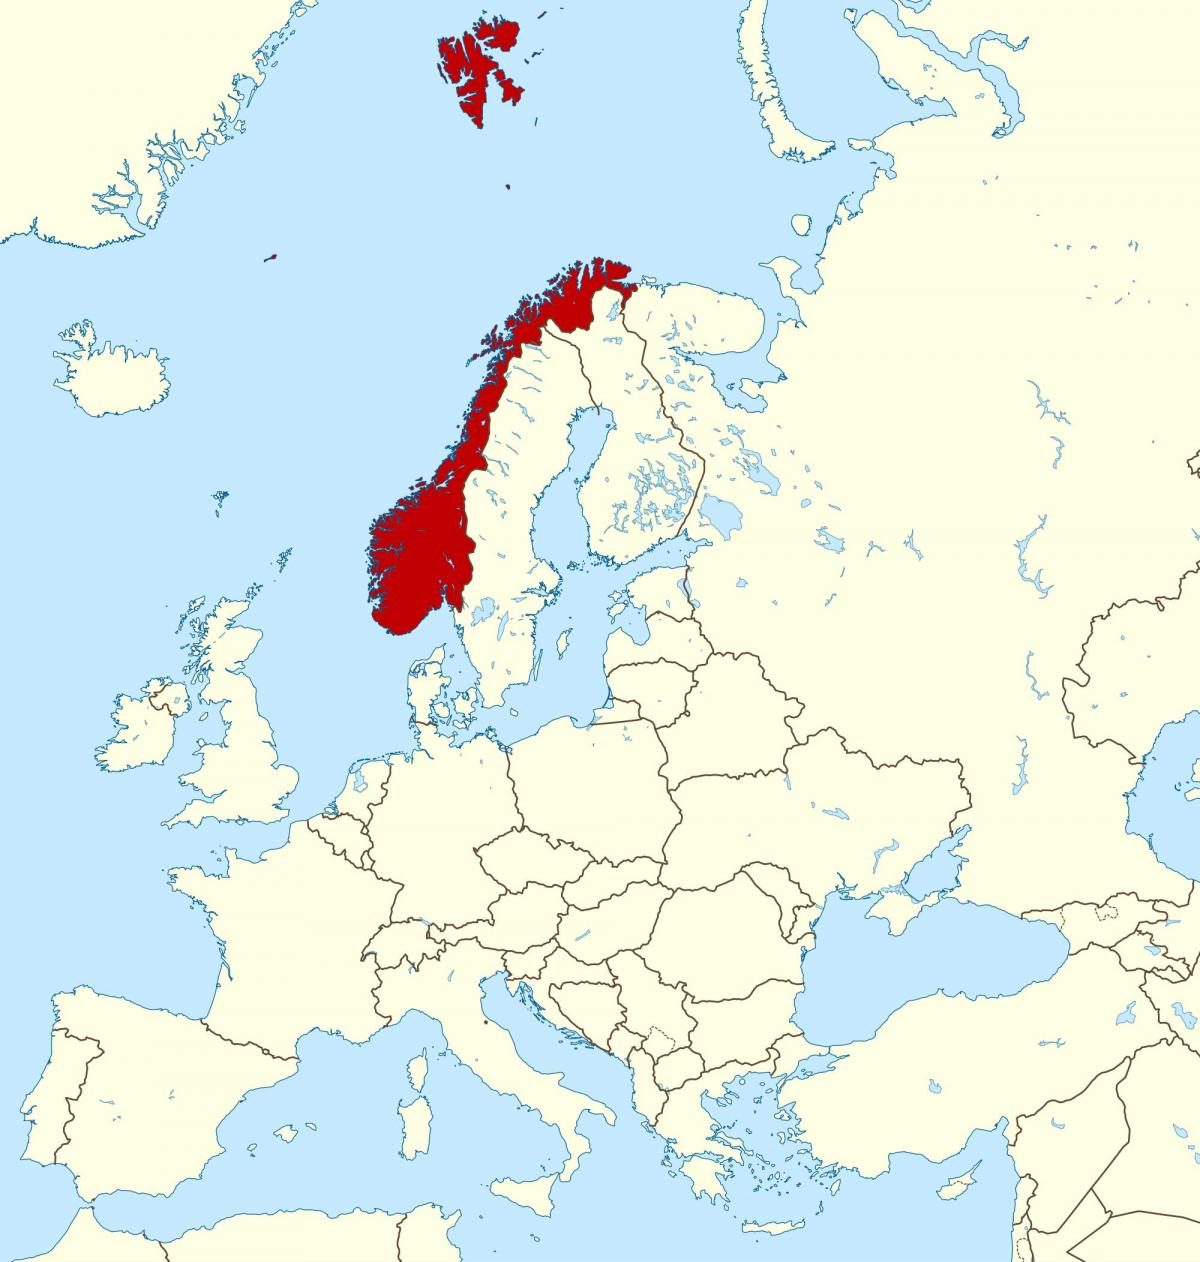 peta Norway dan eropah